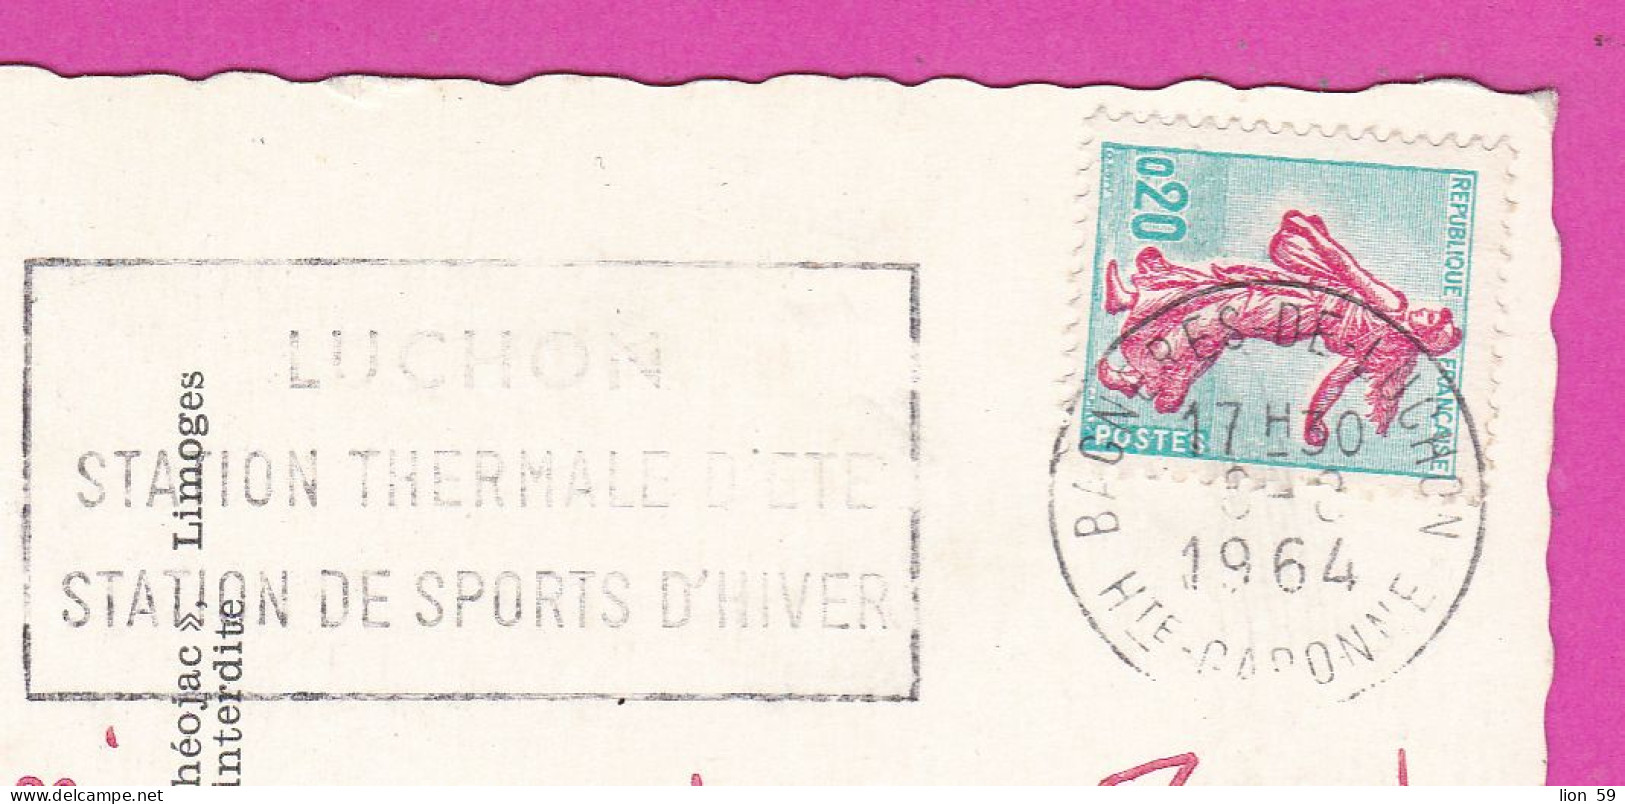 294118 / France - Les Pyrenees Le Col Du Tourmalet 2114 M. PC 1964 USED 0.20 Fr. Semeuse Turquoise Et Rose Flamme LUCHON - Lettres & Documents